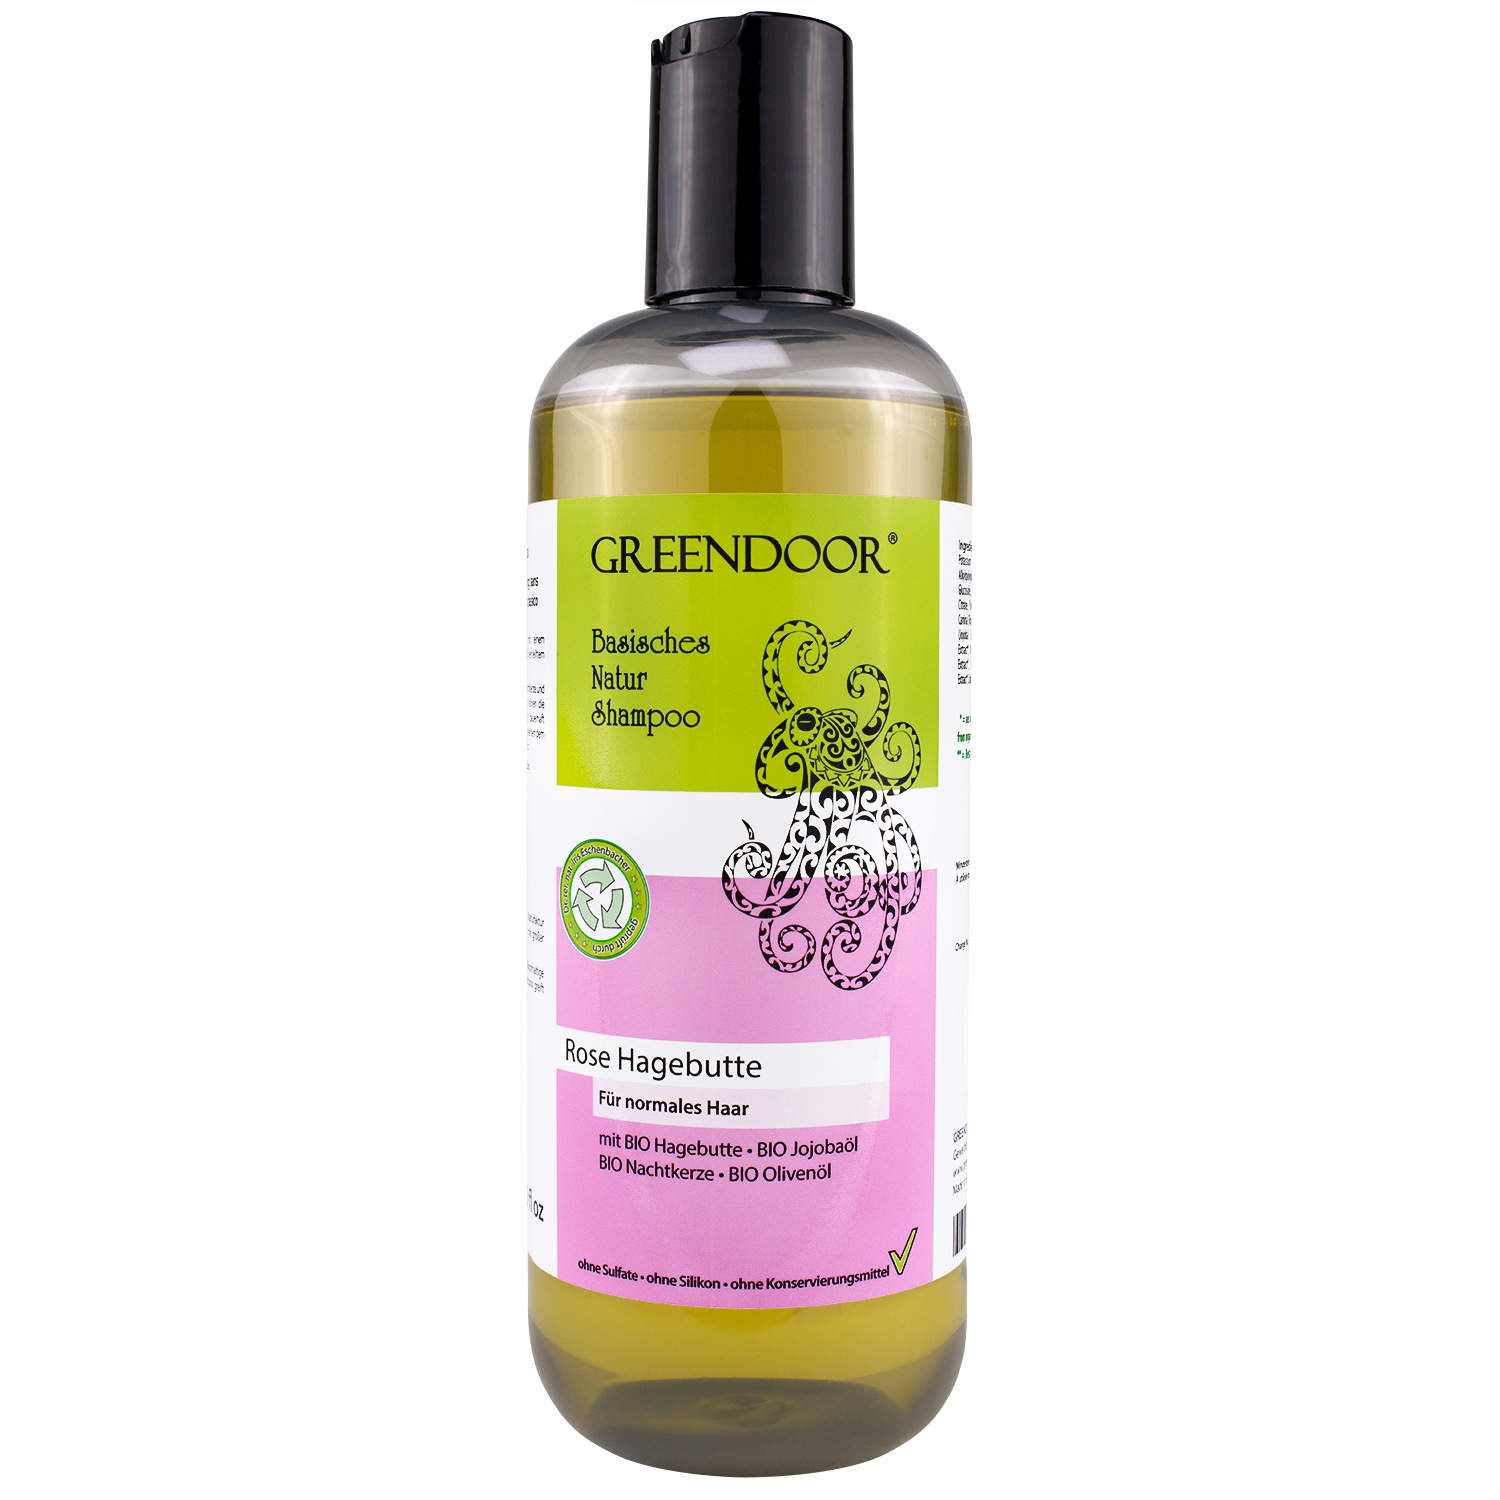 Basisches Natur Shampoo Rose Hagebutte 500ml, vegan, natürlich, outdoor geeignet, mit Bio Ölen